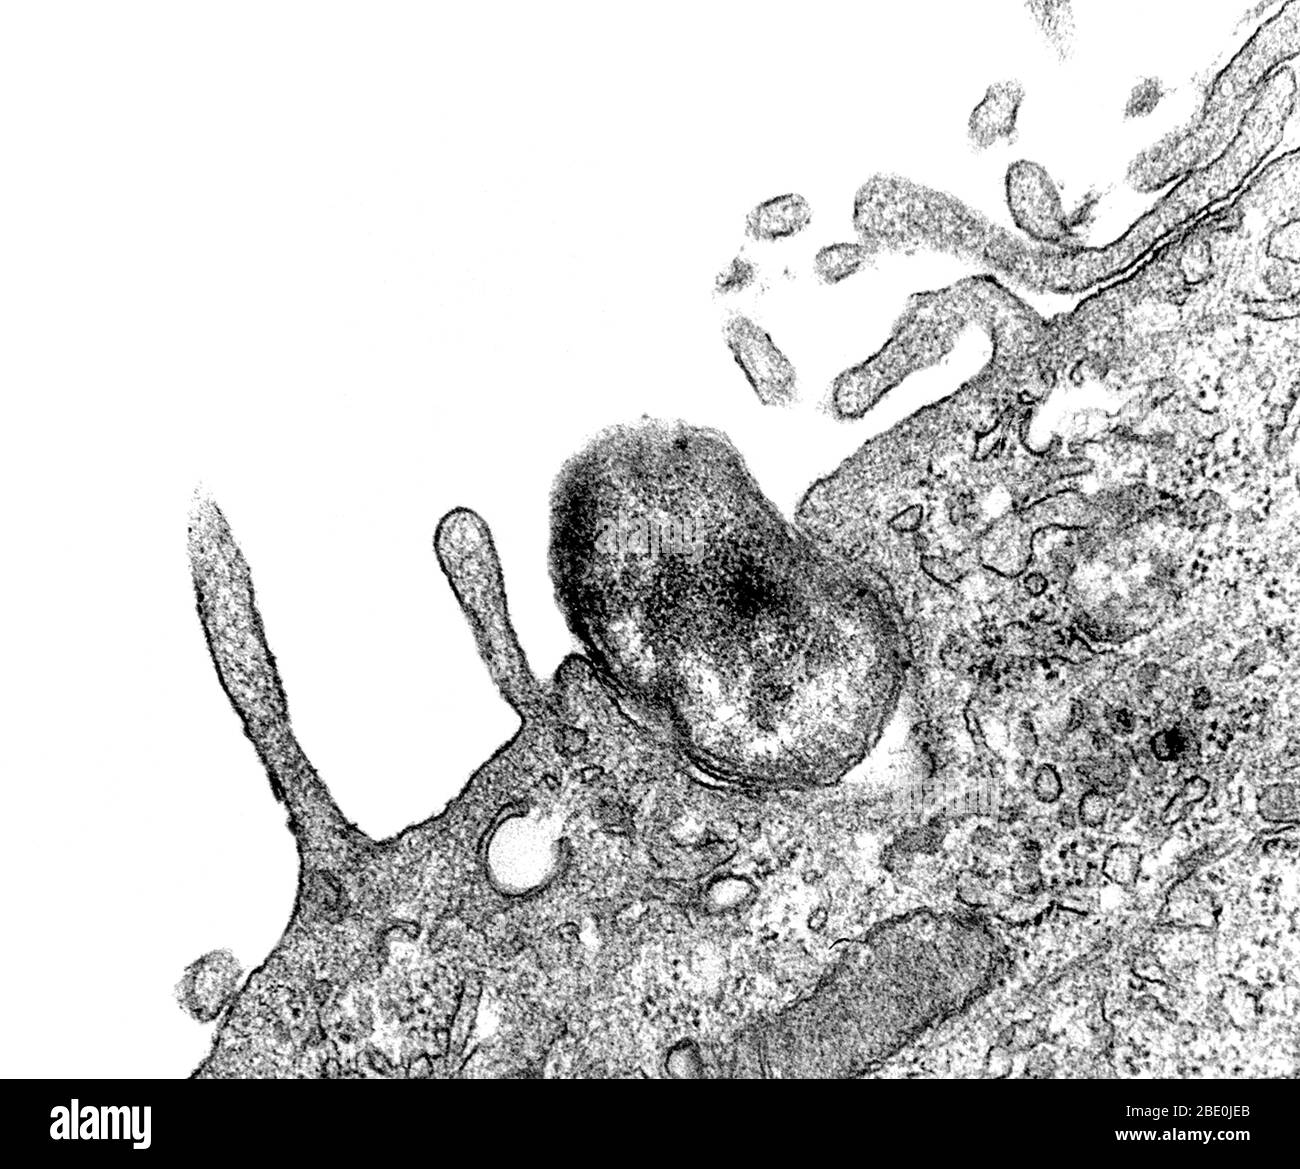 Immagine di microscopio elettronico a trasmissione (TEM) catturata durante il processo di fagocitosi. Qui, si può vedere come un batterio di Orientia tsutsugamushi, precedentemente noto come Rickettsia tsutsugamushi, è stato ingerito da una cellula mesoteliale peritoneale di topo. Si noti come la membrana di cellule ospiti sarebbero non aveva ancora completamente avvolto il batterio. Ingrandimento: Sconosciuto. Foto Stock